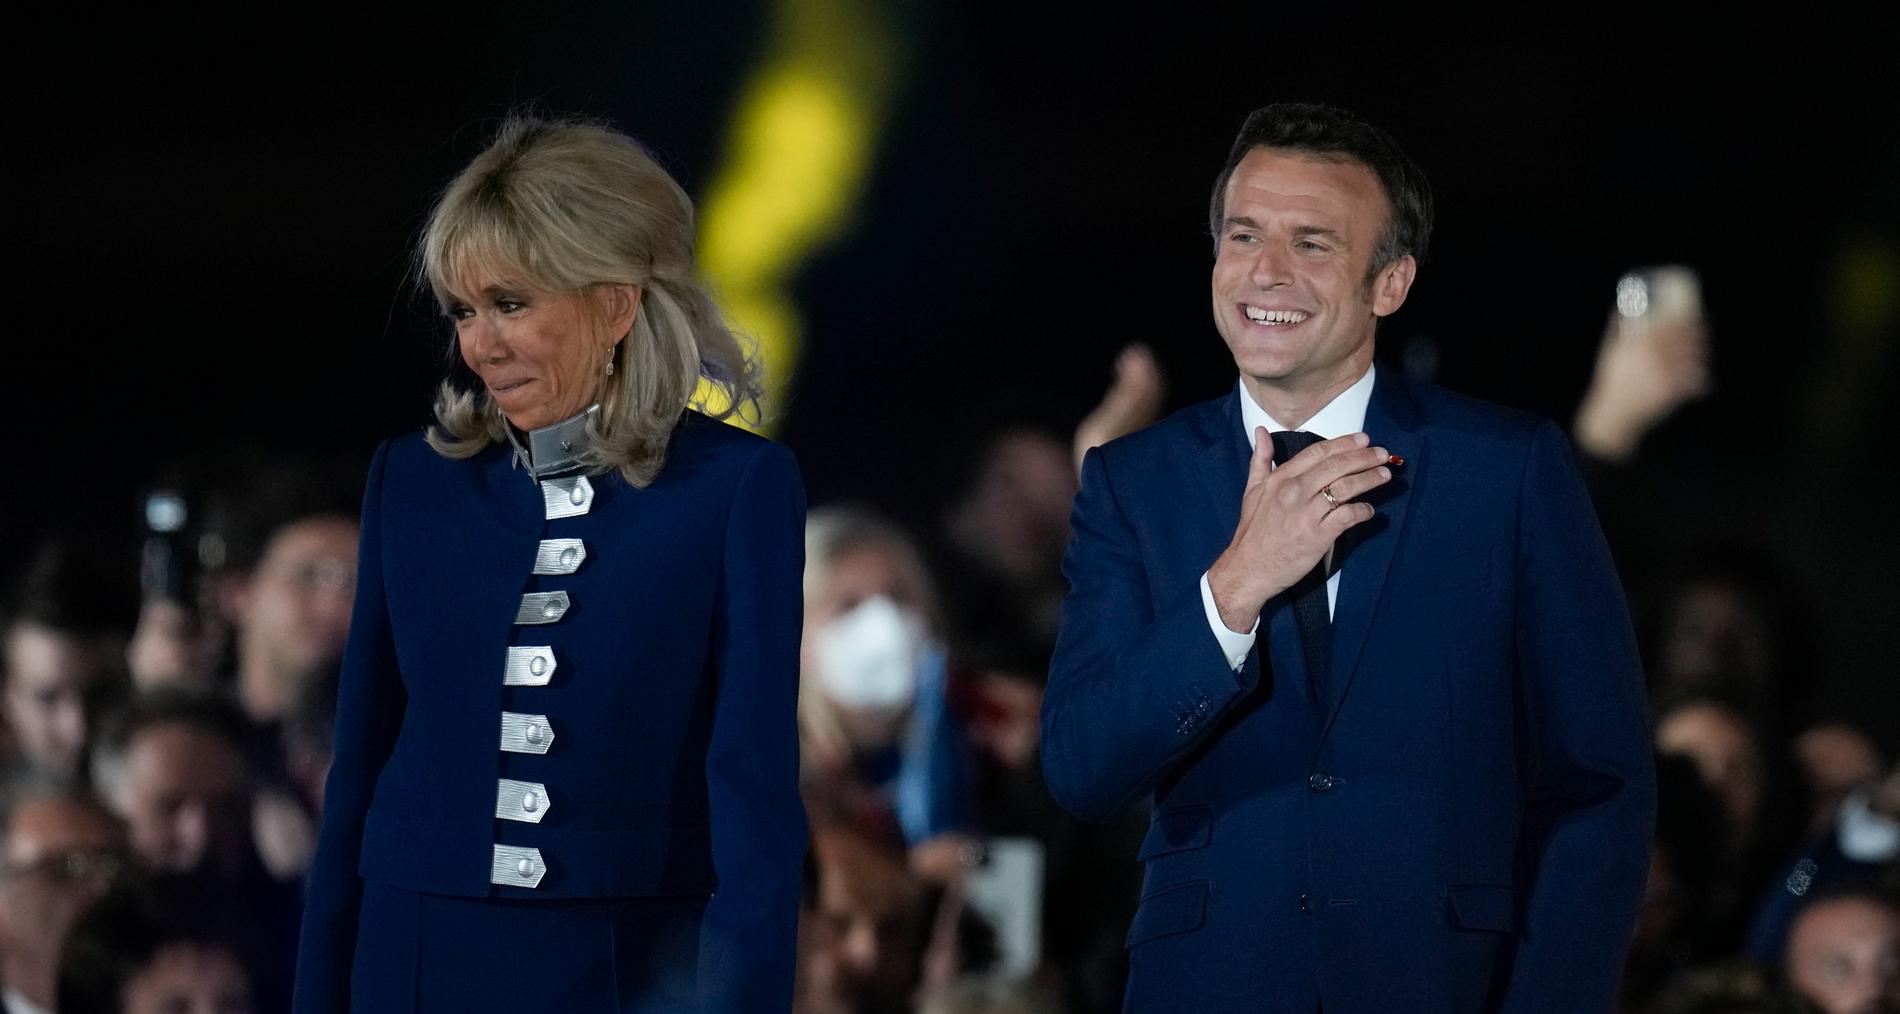 Emanuel Macron firar segern tillsammans med sin fru Brigitte Macron